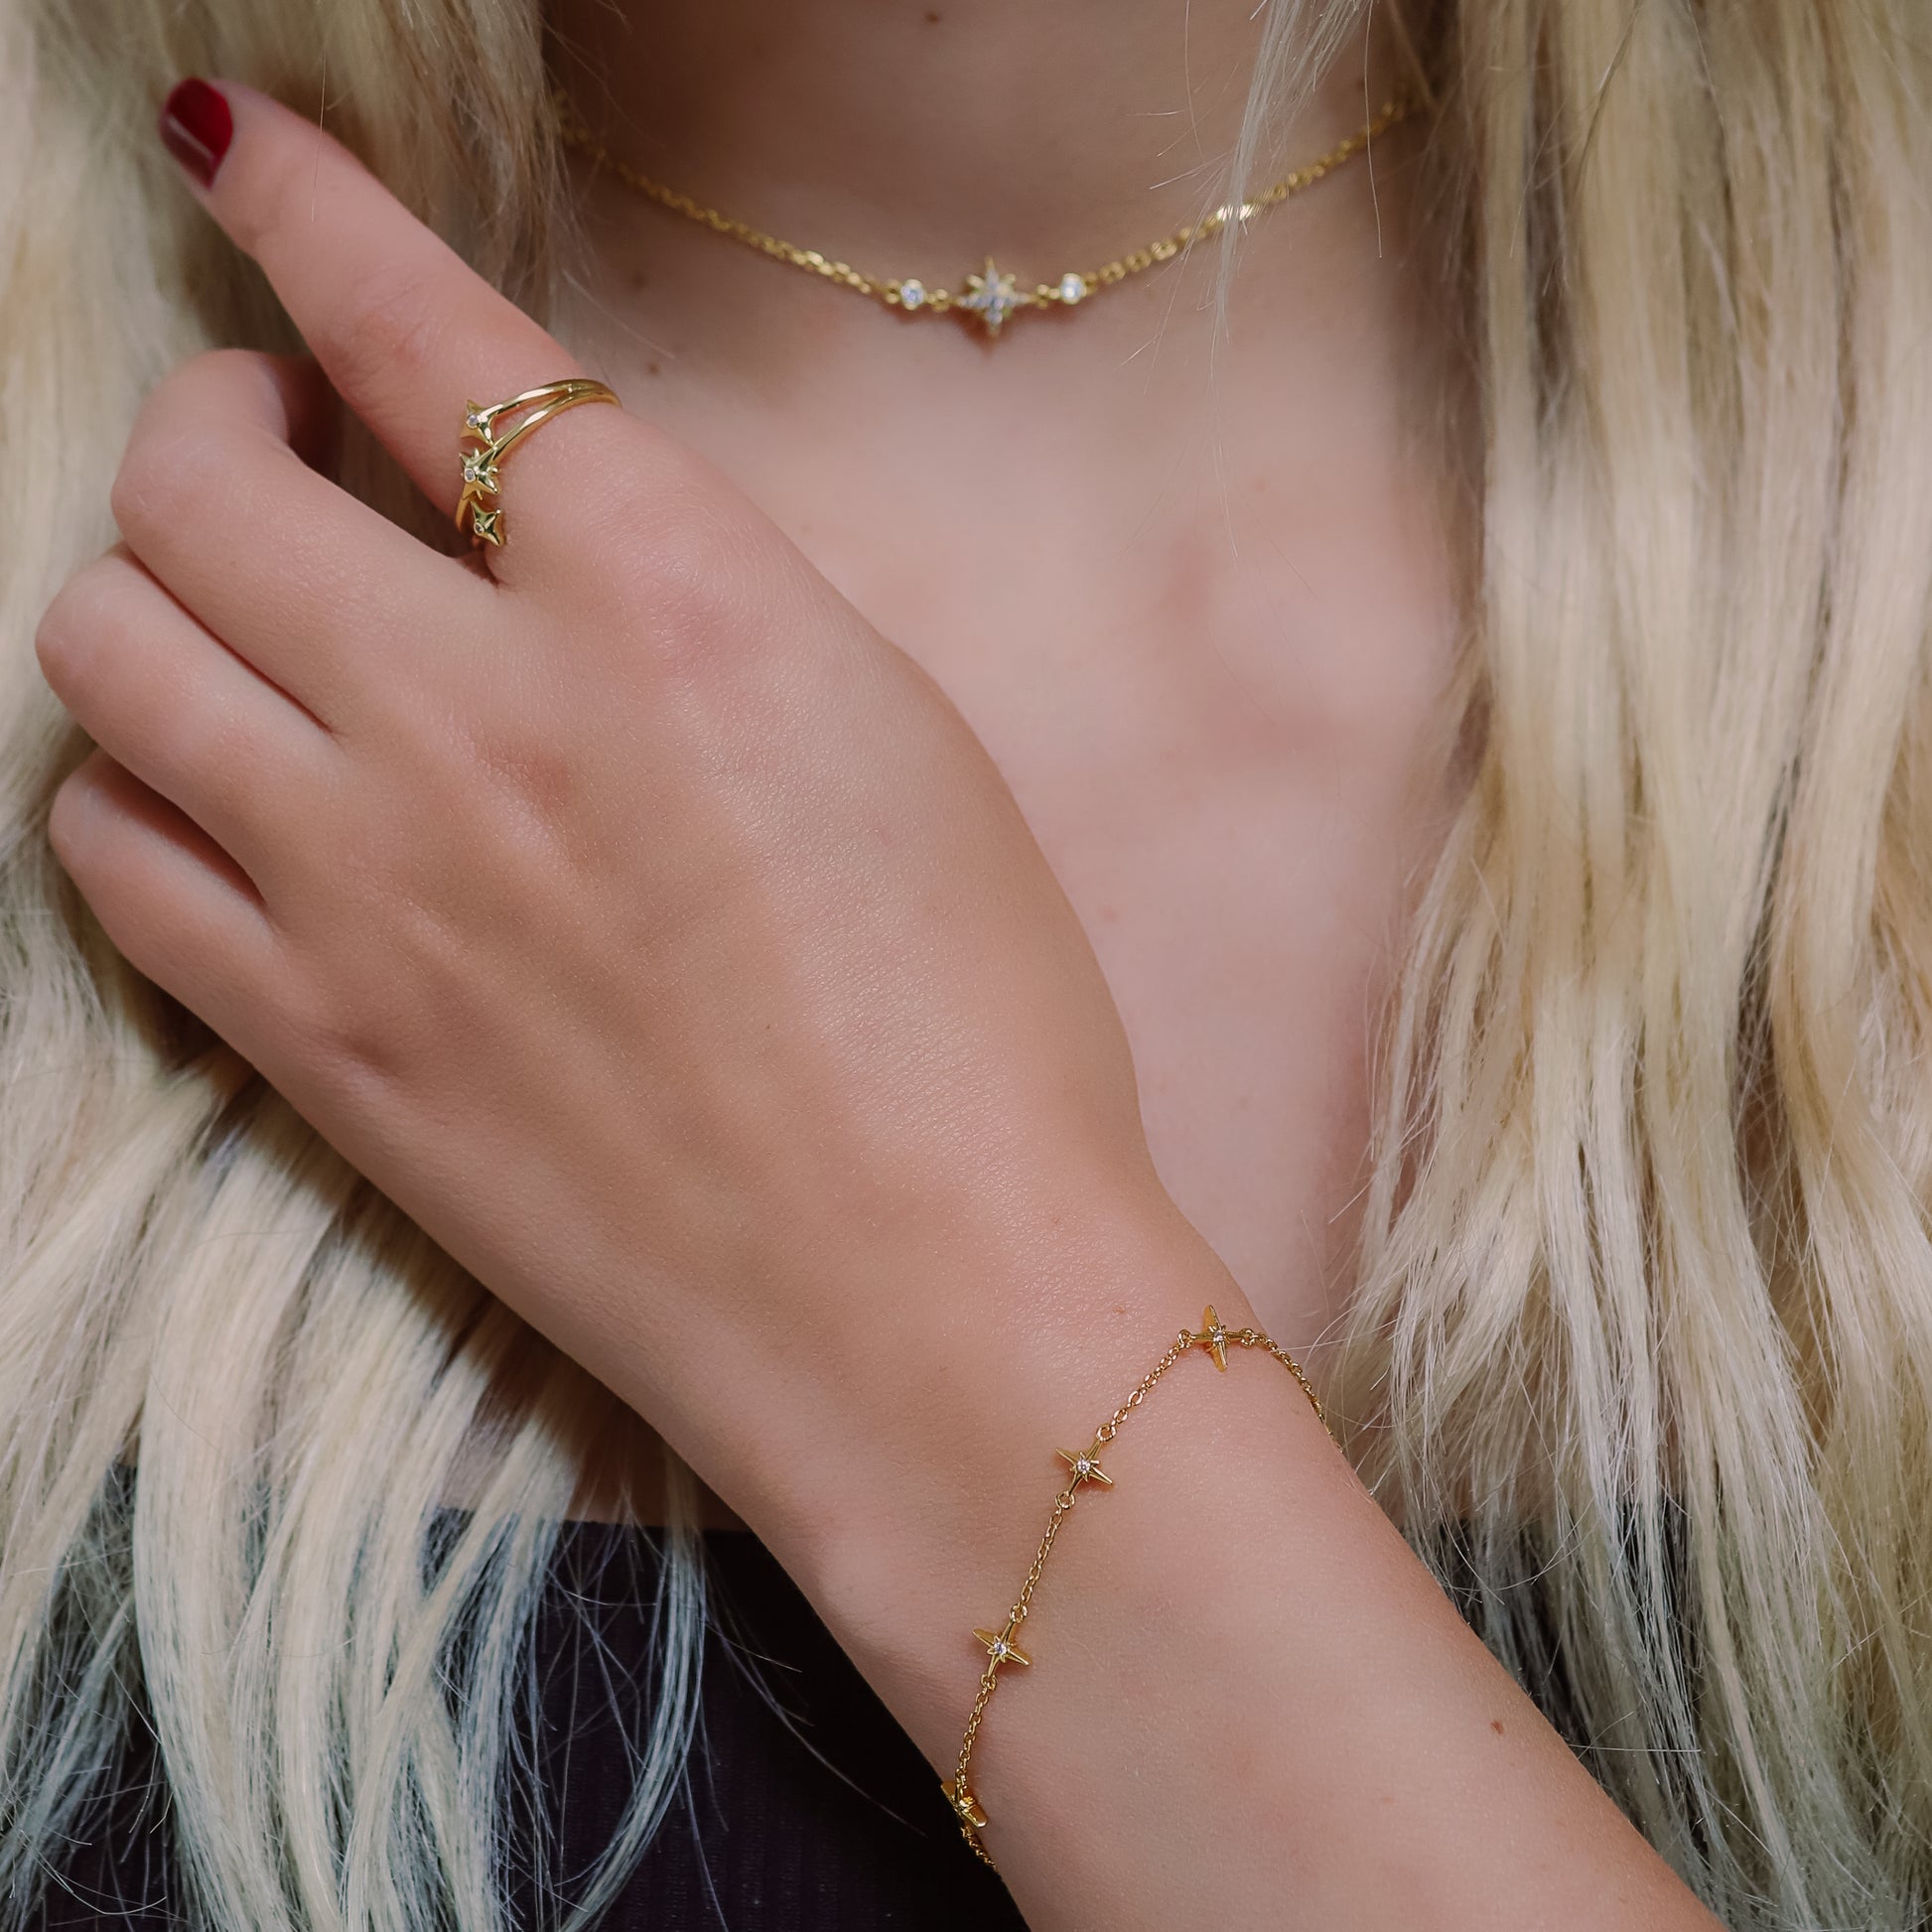 Tessa Starburst bracelet | 18K Gold Plated